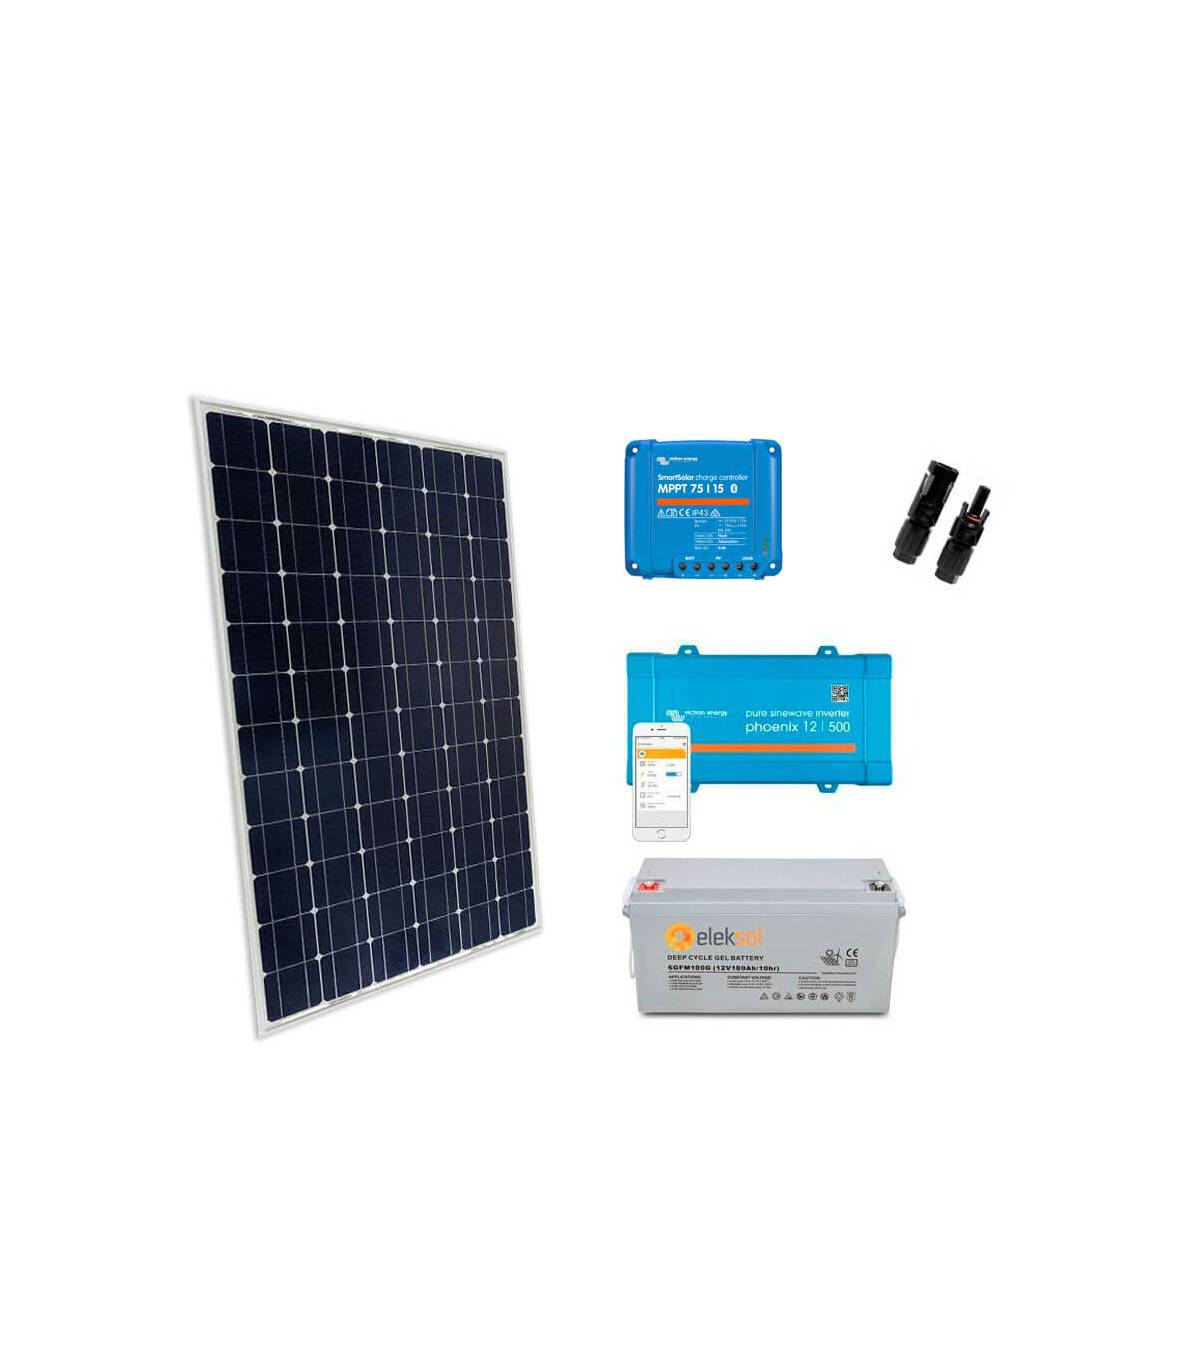 Kit Solar  El mejor sistema fotovoltaico para mi casa